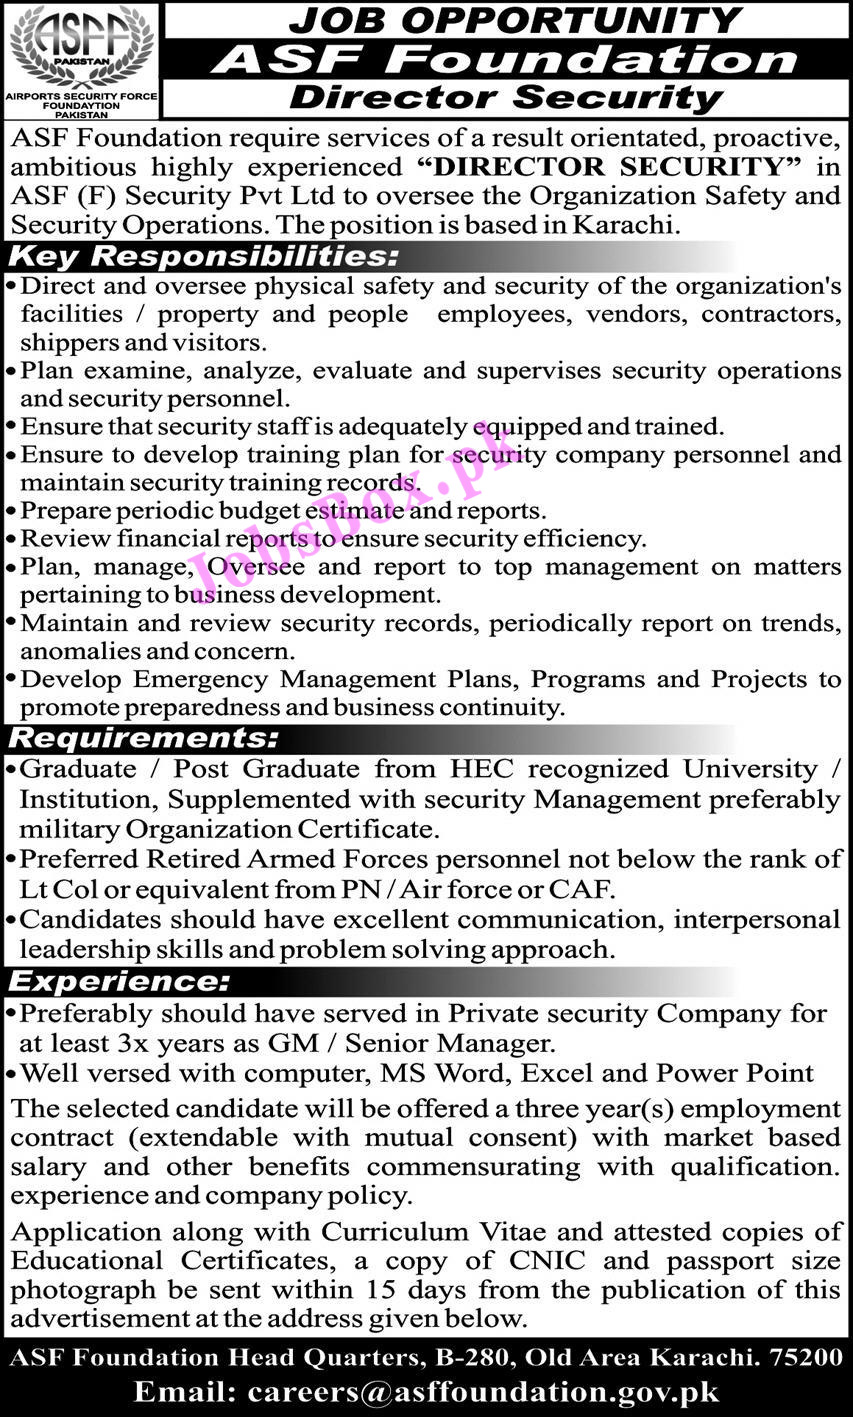 ASF Jobs 2021 in Rawalpindi